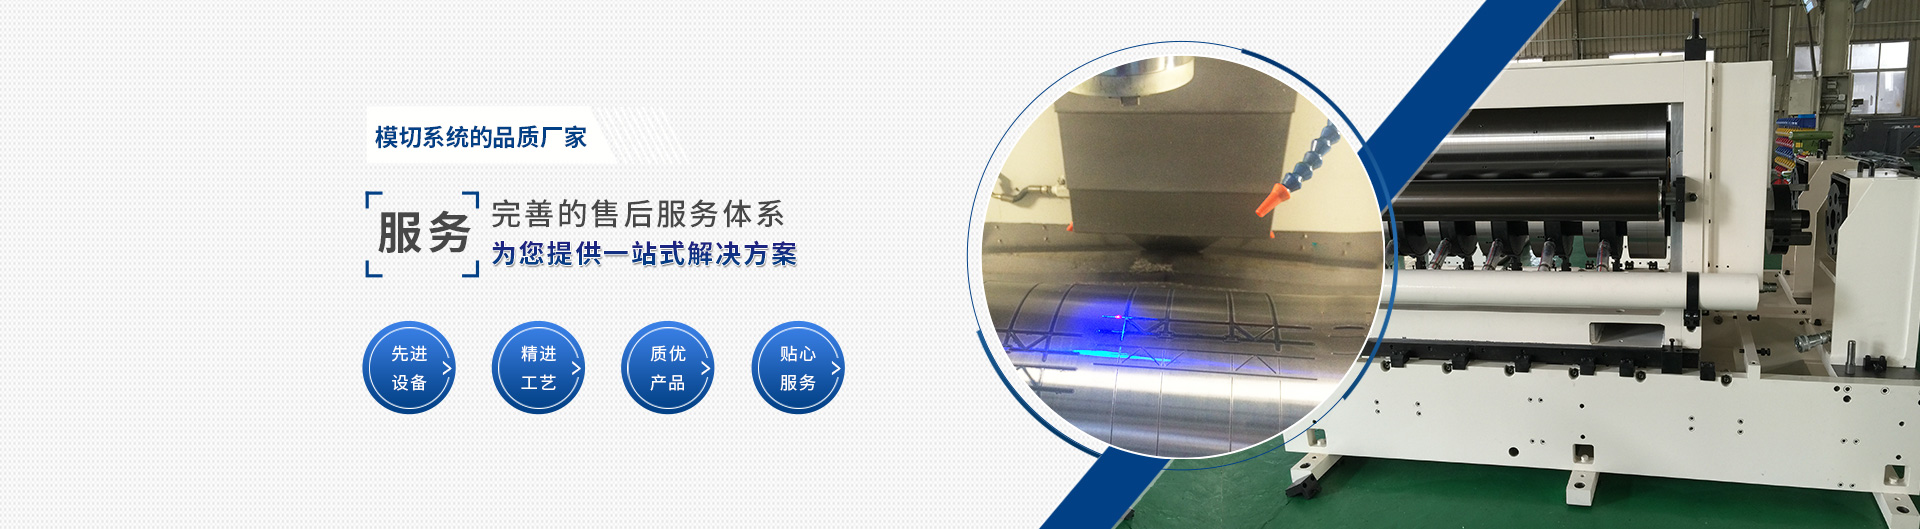 上海宗力印刷包装机械有限公司